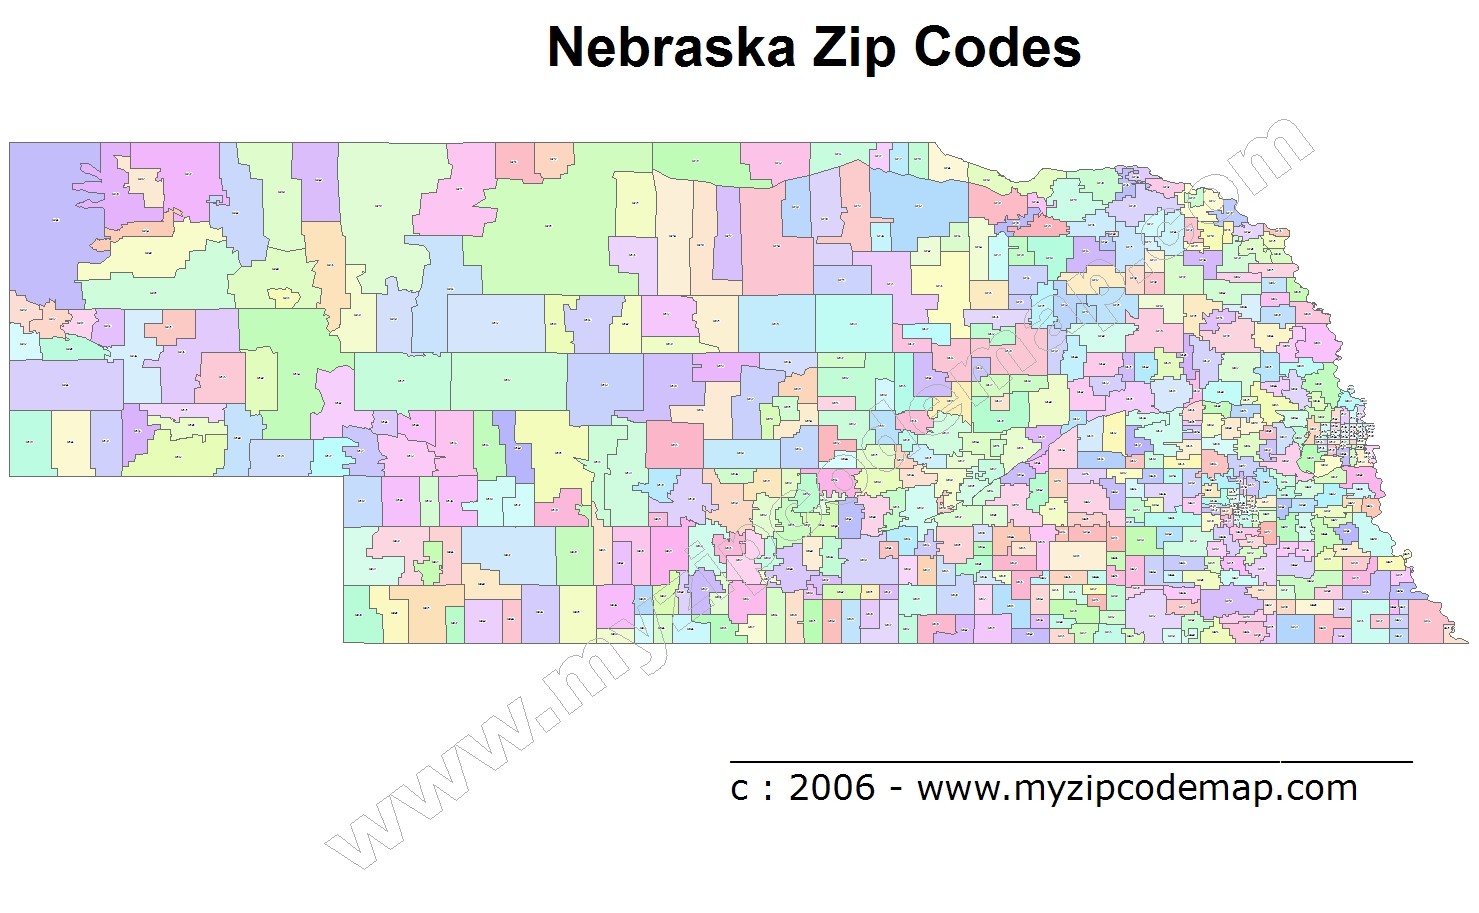 Nebraska Zip Code Maps Free Nebraska Zip Code Maps